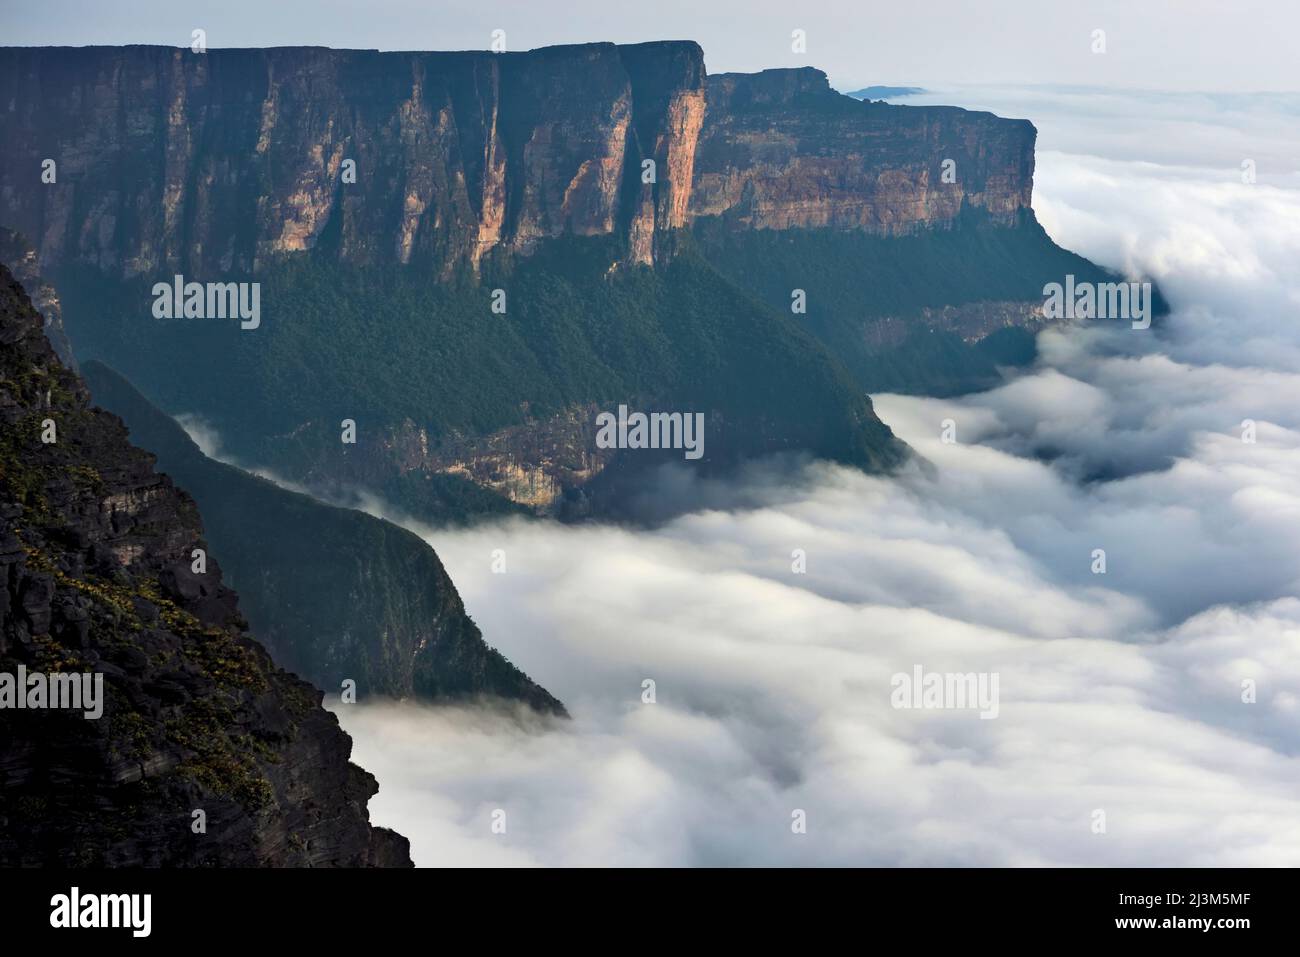 The east facing cliffs of Auyan Tepui.; Gran Sabana, Venezuela. Stock Photo